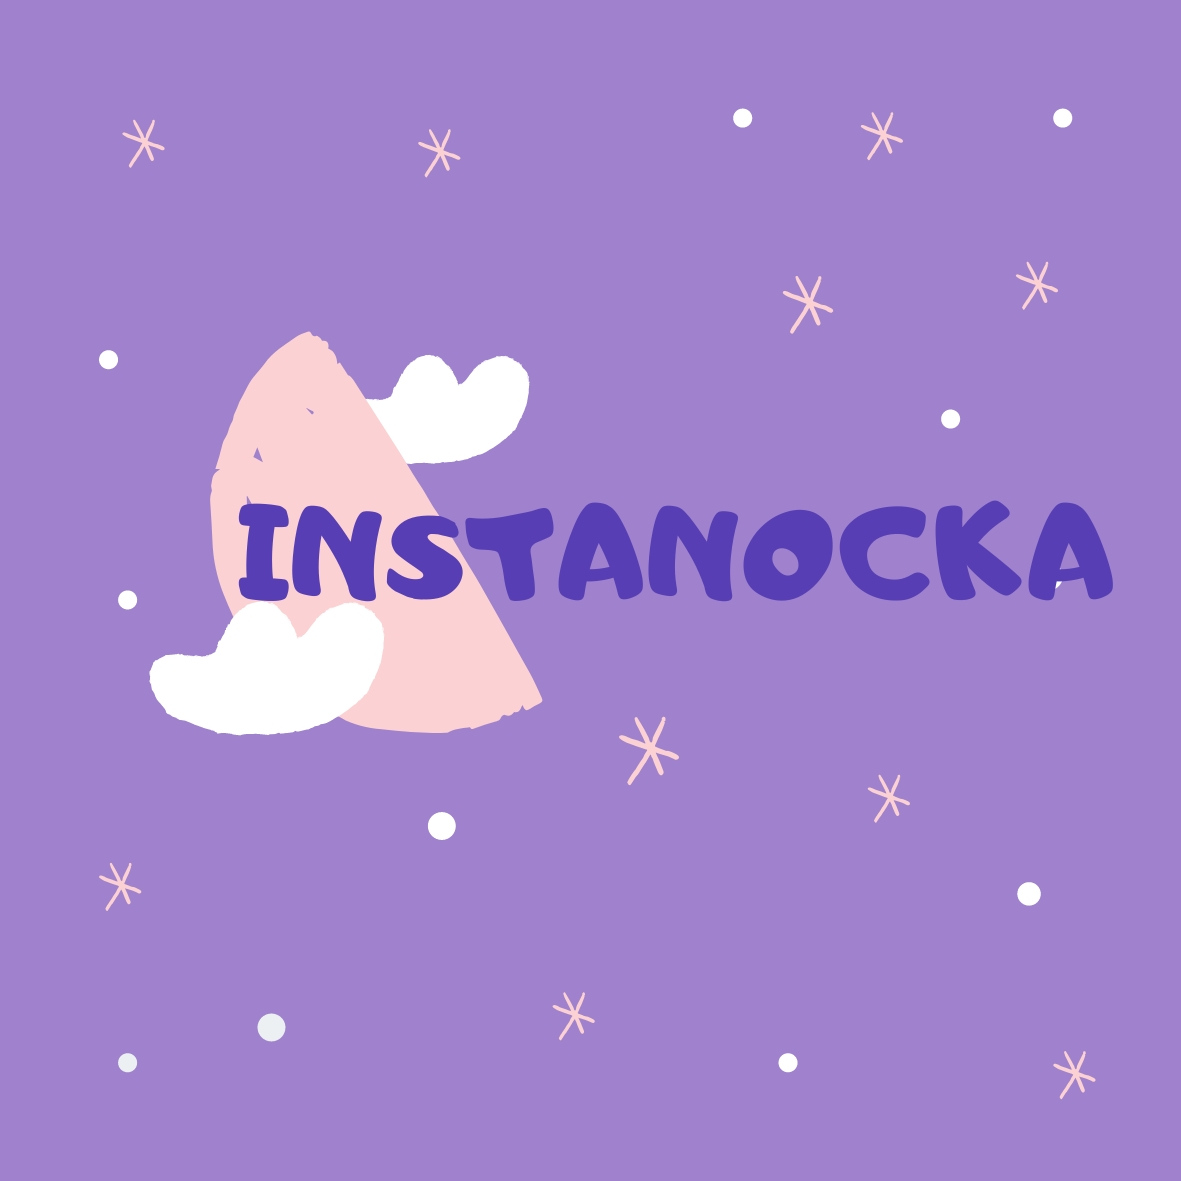 InstaNocka – znani artyści czytają bajki dzieciom na Instagramie i pomagają charytatywnie.